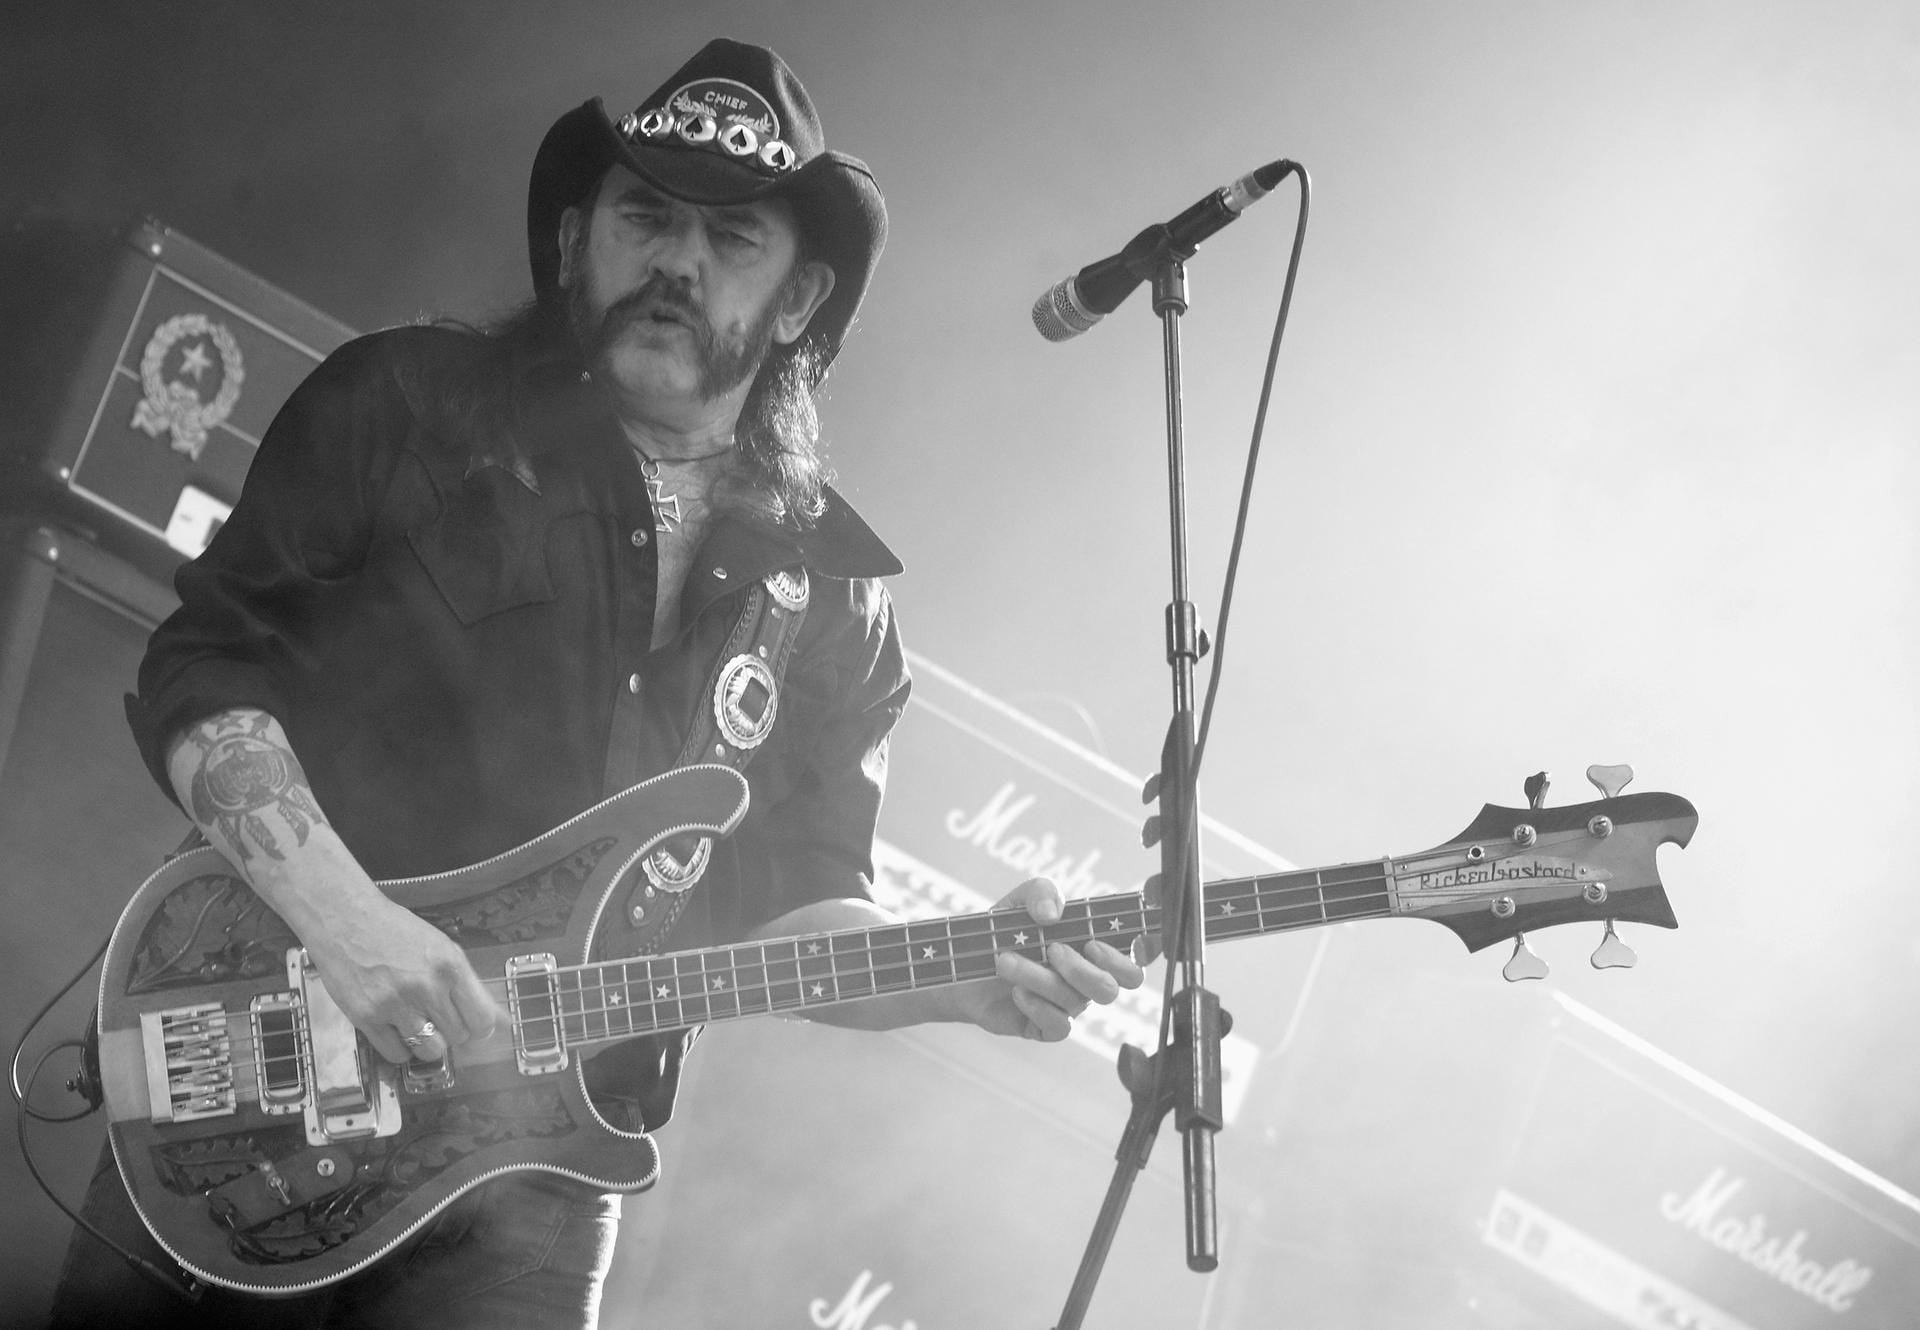 Ian Fraser "Lemmy" Kilmister, Frontmann der Hardrockband Motörhead, starb am 28. Dezember 2015 an einer Krebserkrankung. Die Diagnose wurde ihm erst zwei Tage zuvor mitgeteilt. Der Brite, der am 24. Dezember noch seinen 70. Geburtstag feierte, galt bei einer ganzen Generation von Rock- und Metalfans als Idol.